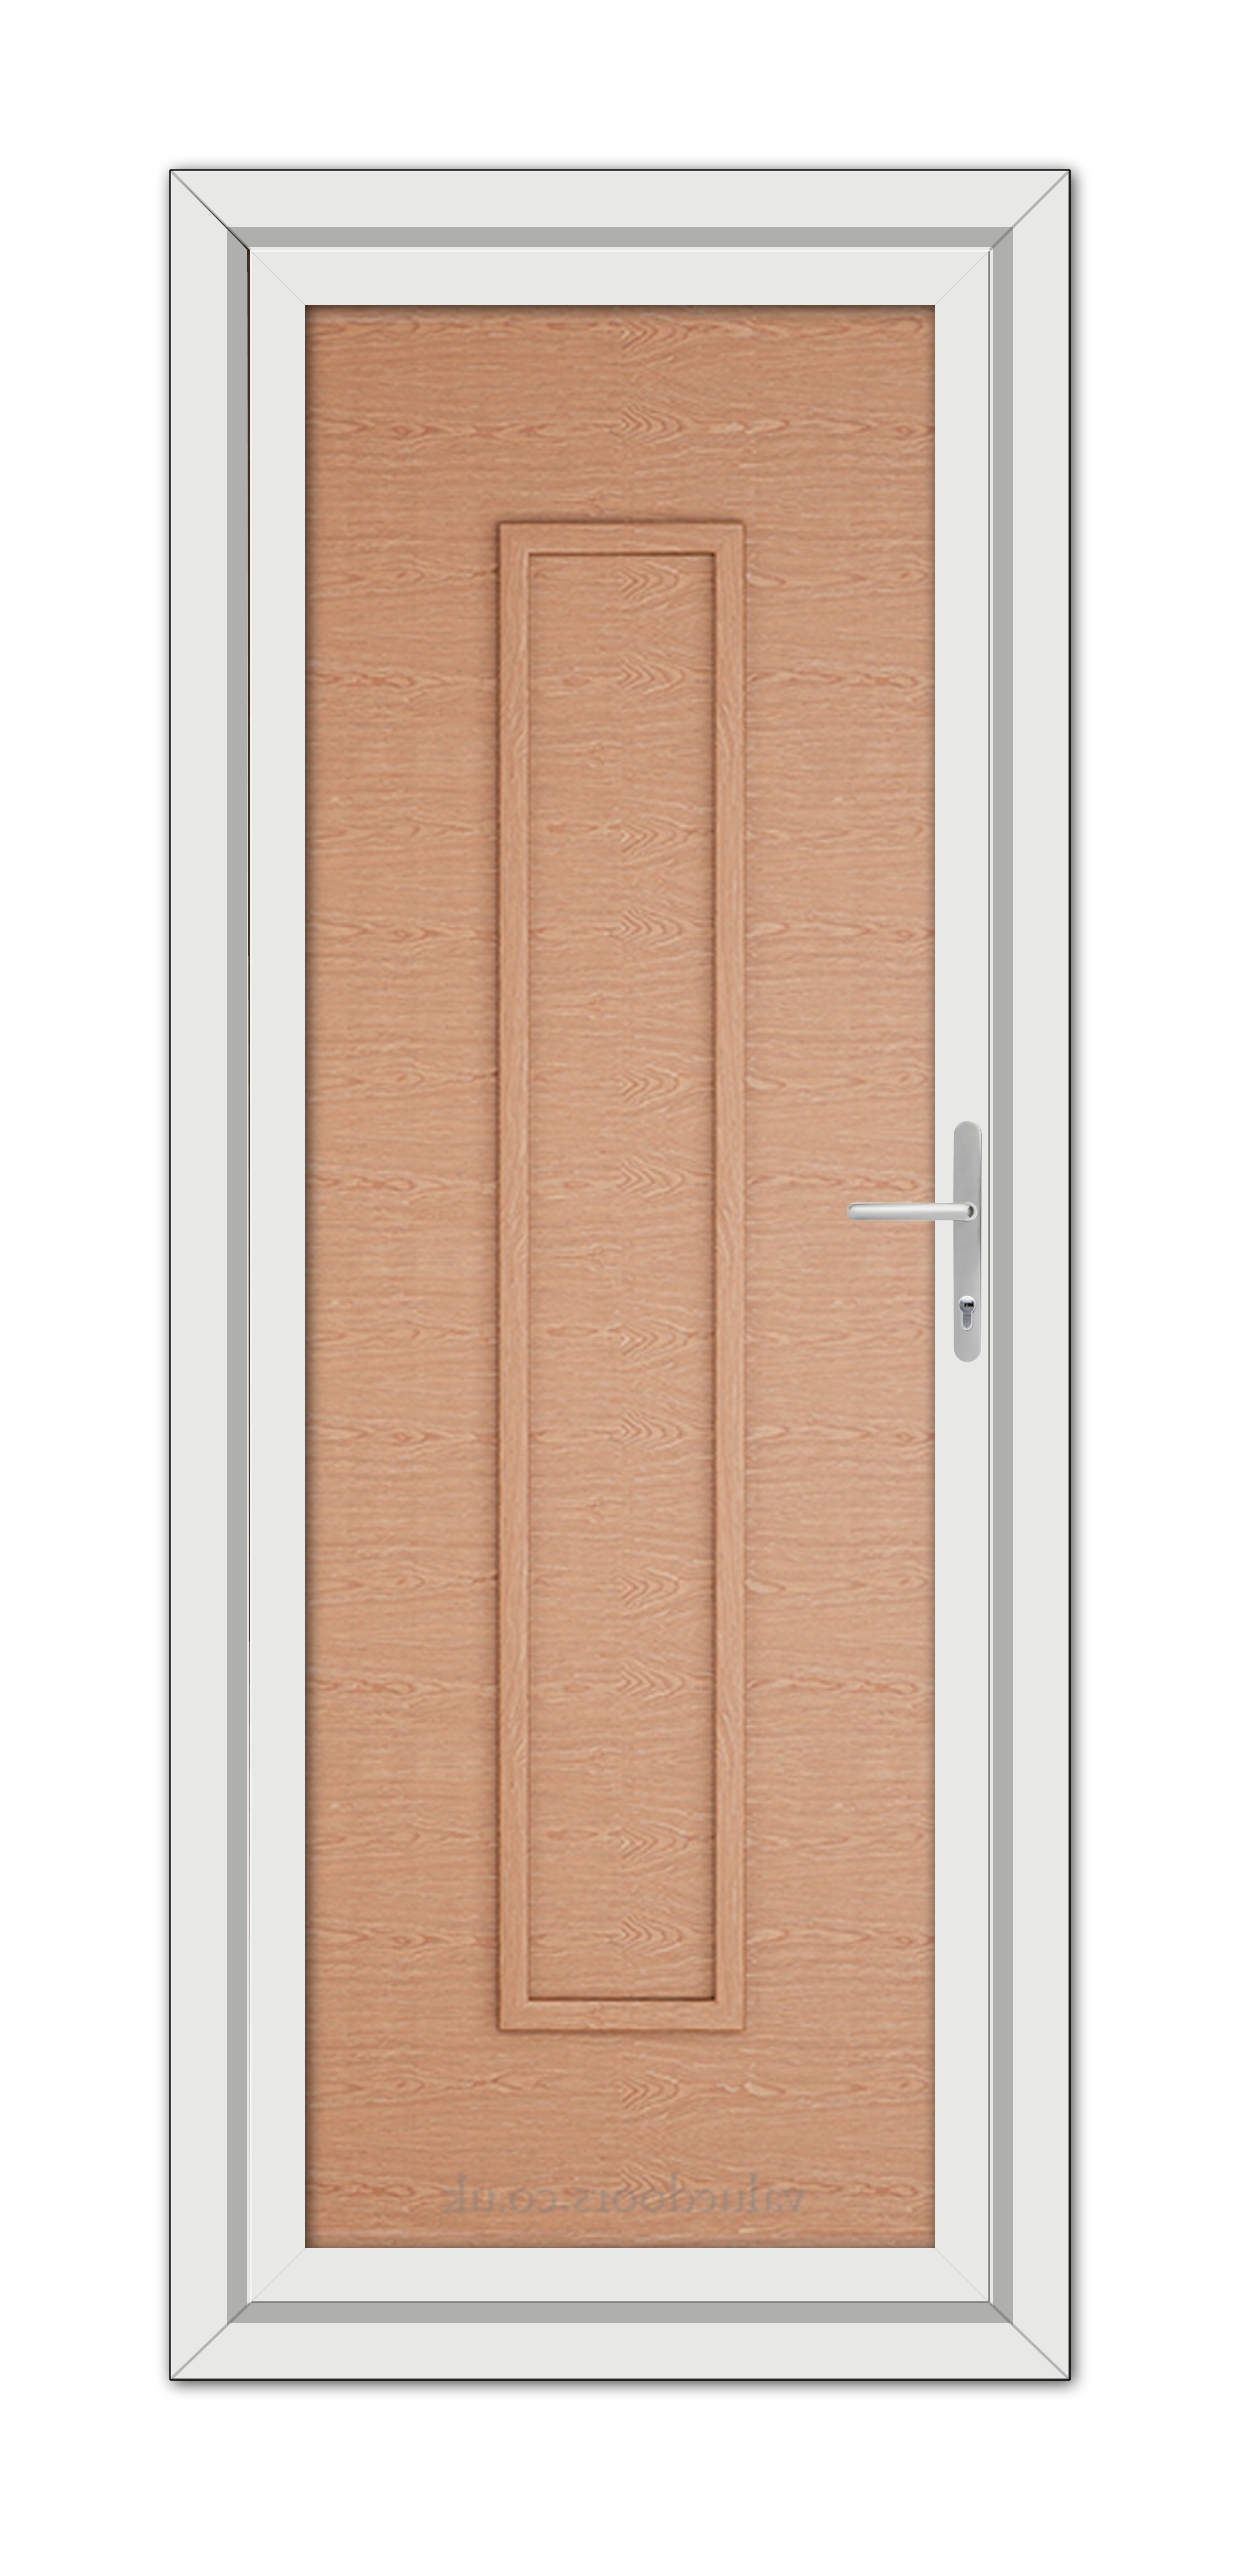 A close-up of an Irish Oak Modern 5101 Solid uPVC Door.